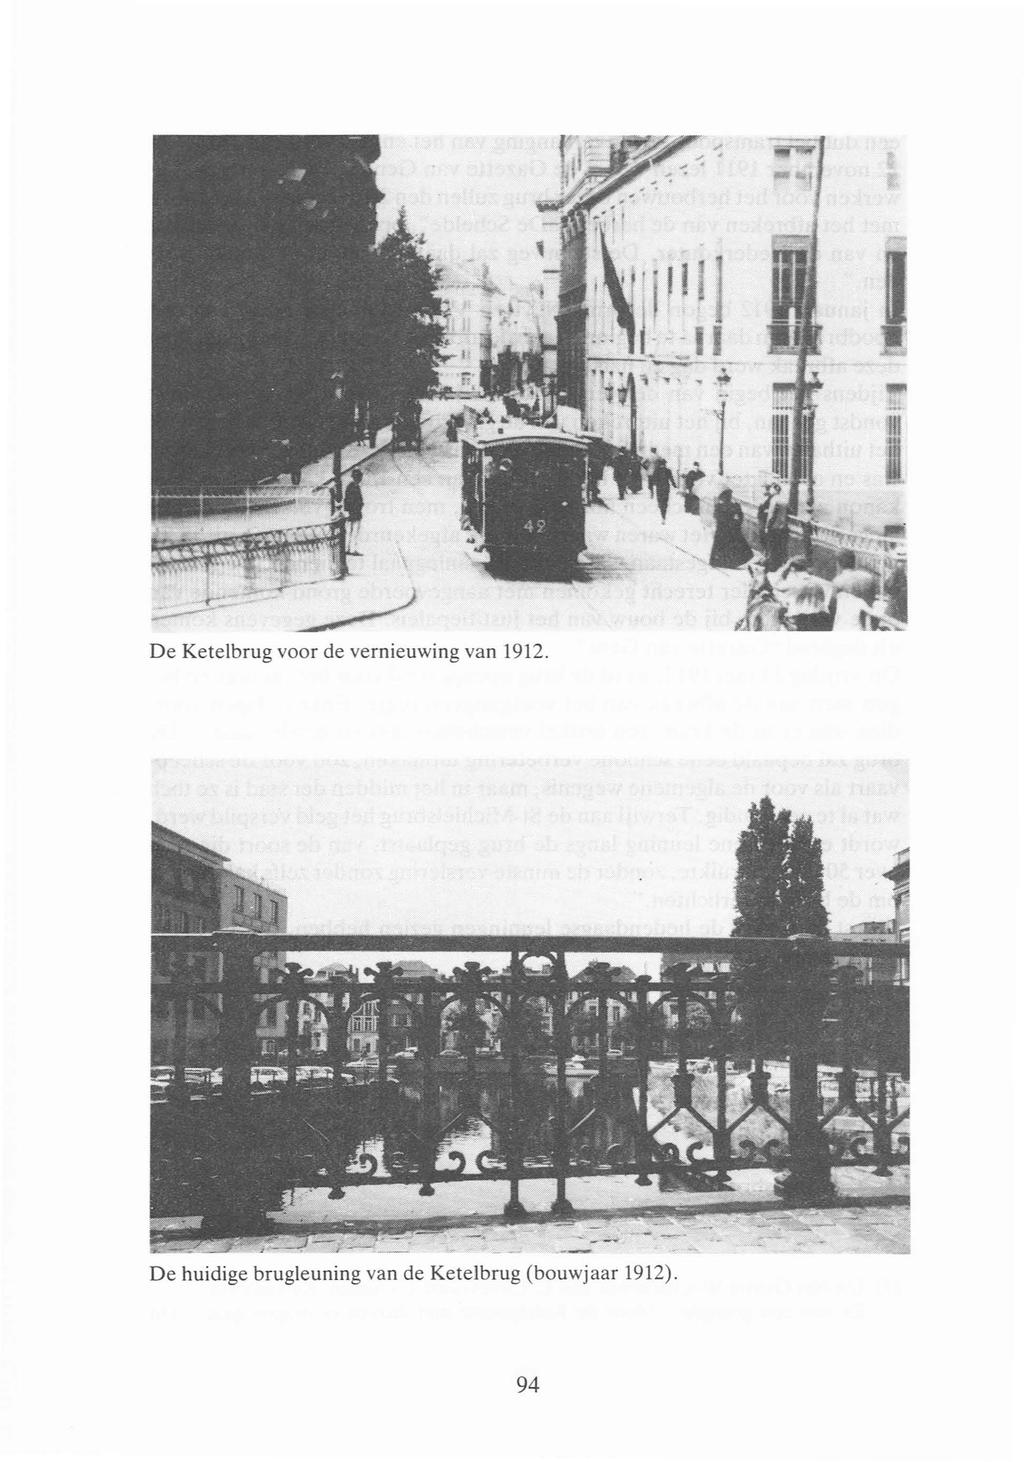 De Ketelbrug voor de vernieuwing van 1912.